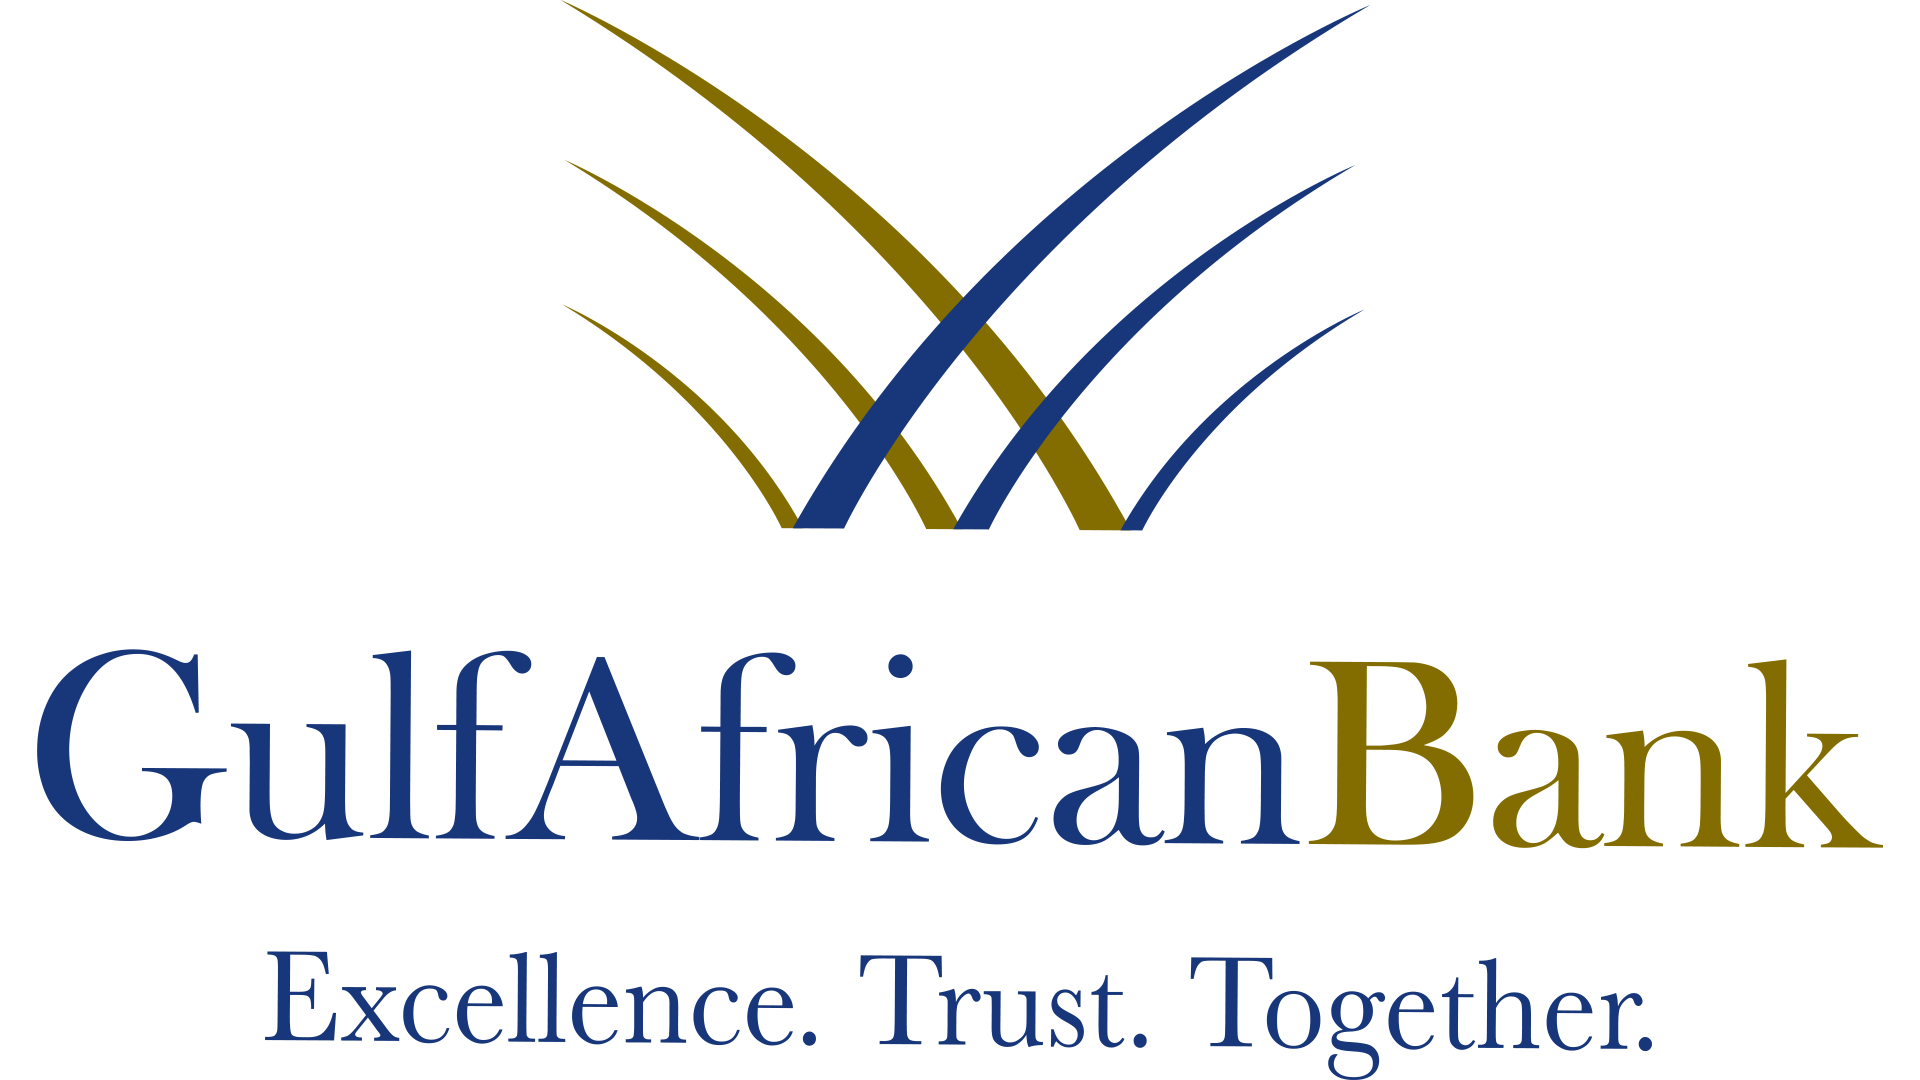 Banks Logo - Gulf African Bank logo voitcom. Gulf African Bank. Banks logo